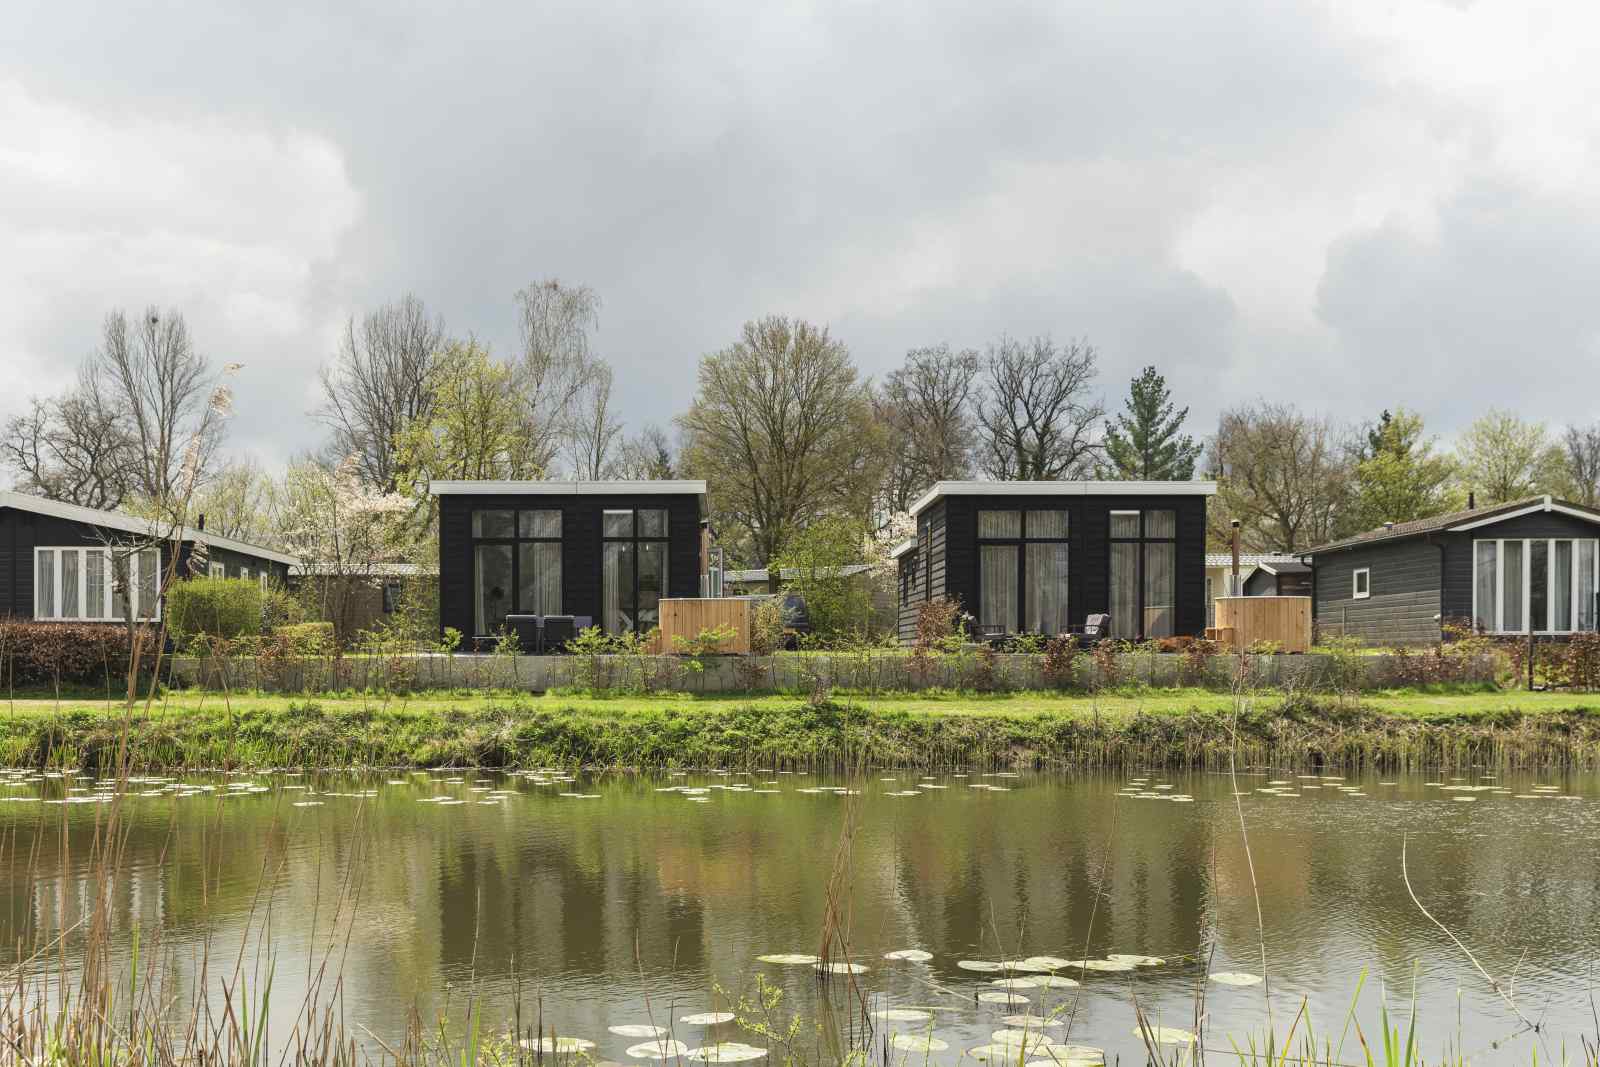 Luxe 4 pers. vakantiehuis op Vakantiepark Mölke, een superleuke vakantie gegarandeerd - Nederland - Europa - Zuna